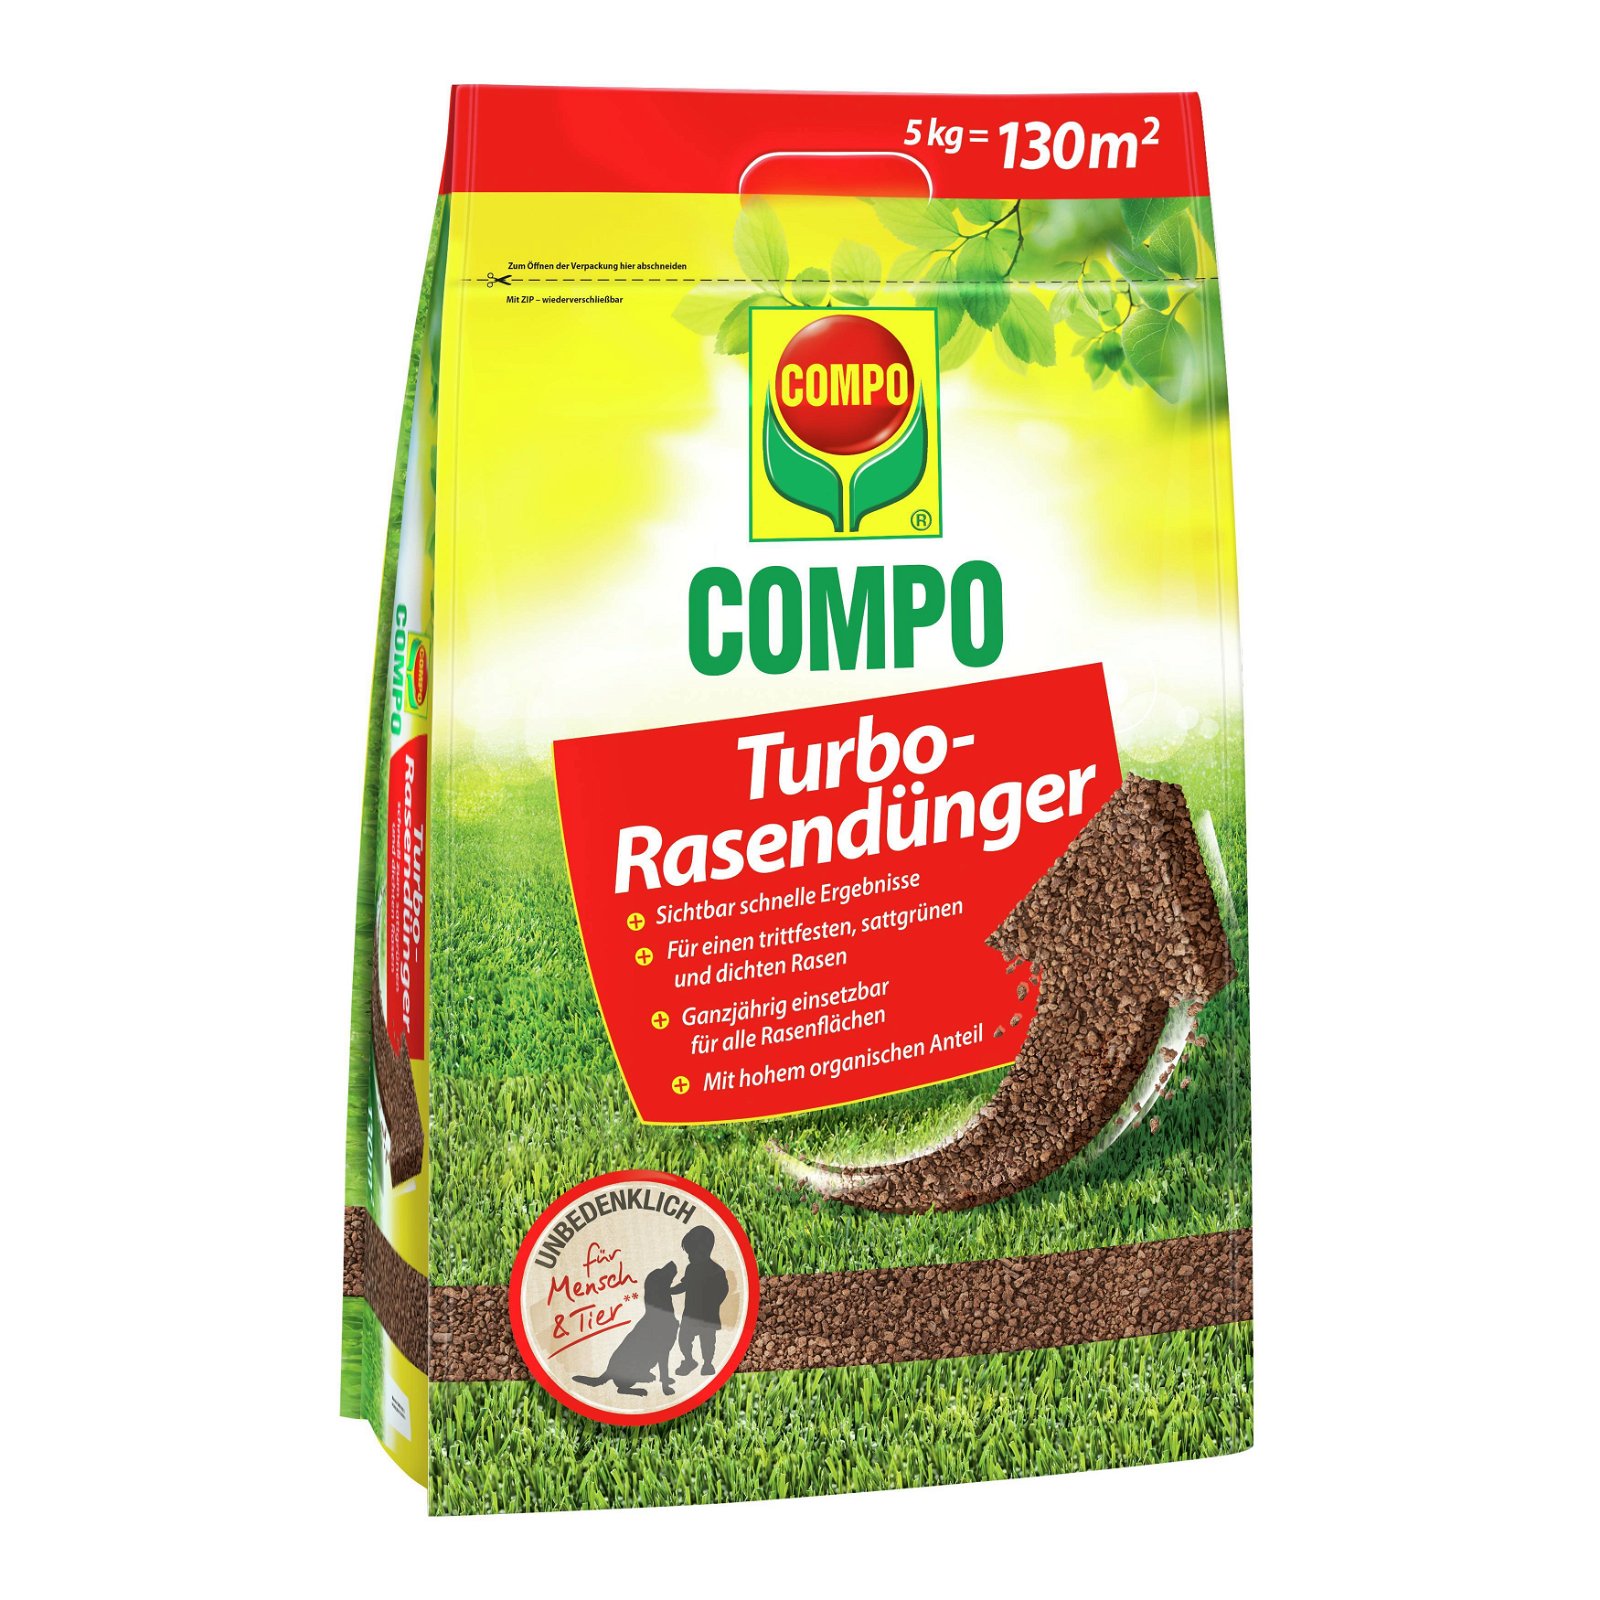 Turbo-Rasendünger für 130 qm, 5 kg